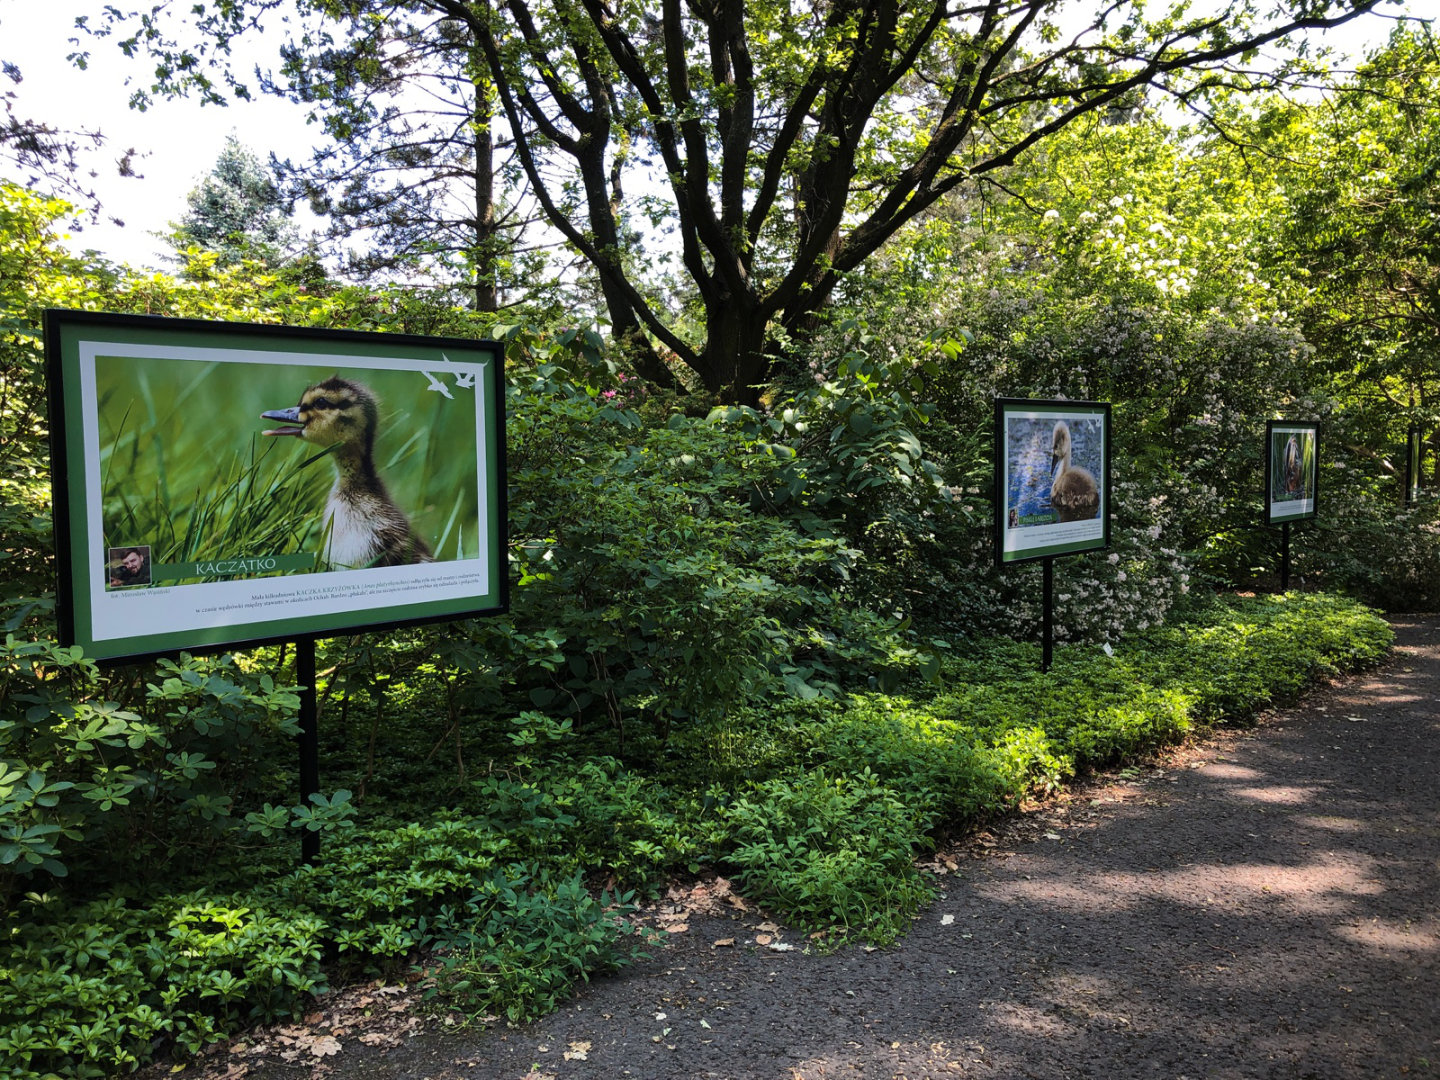 Aleja ogrodowa w arboretum, przy której stoją stelaże ze zdjęciami przyrodniczymi